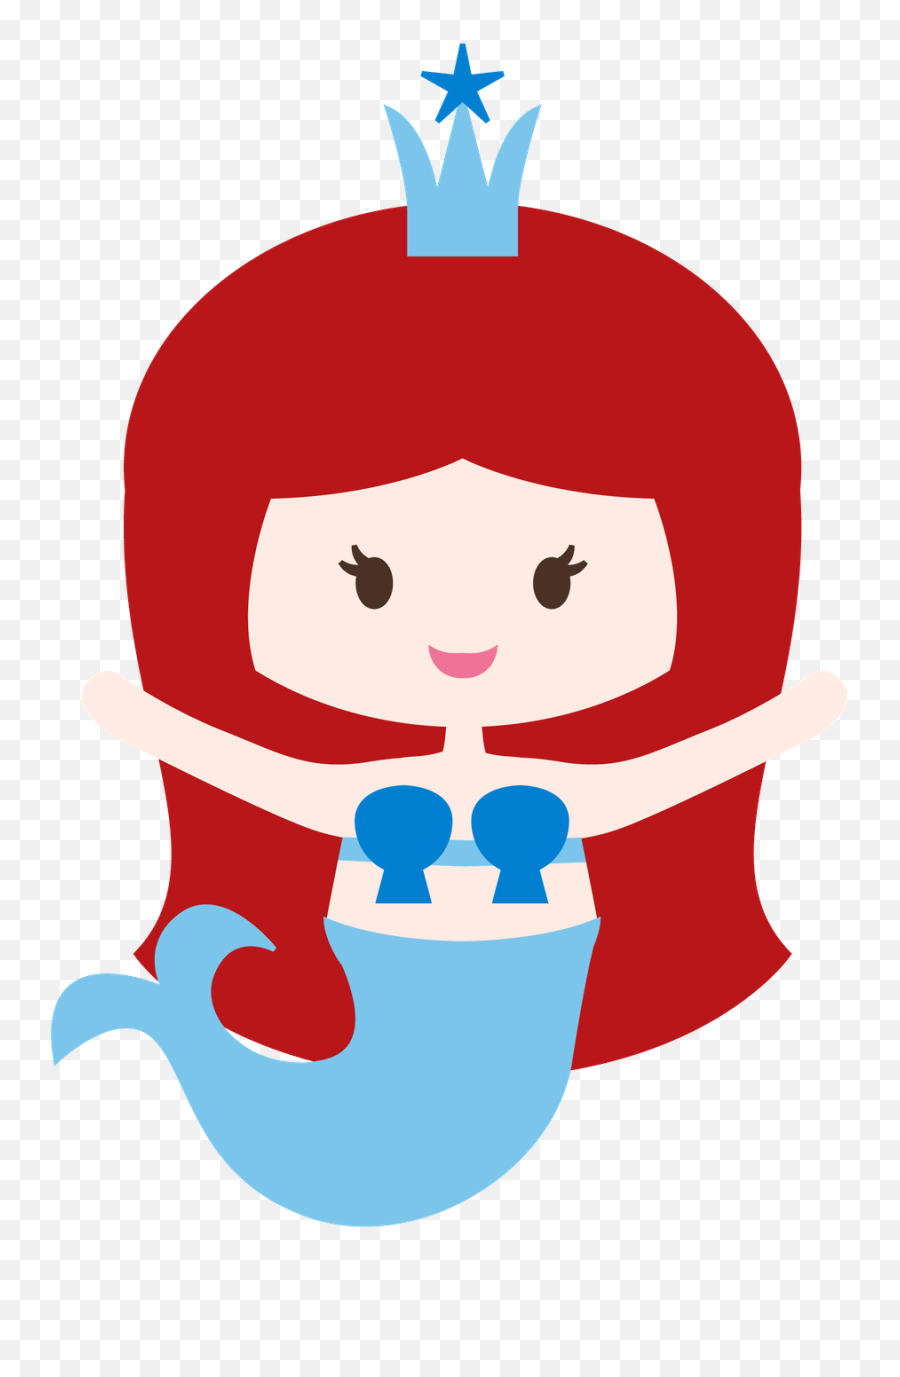 Princesas E Fadas 2 - Sirenas De Caricatura Emoji,Little Mermaid Emoji